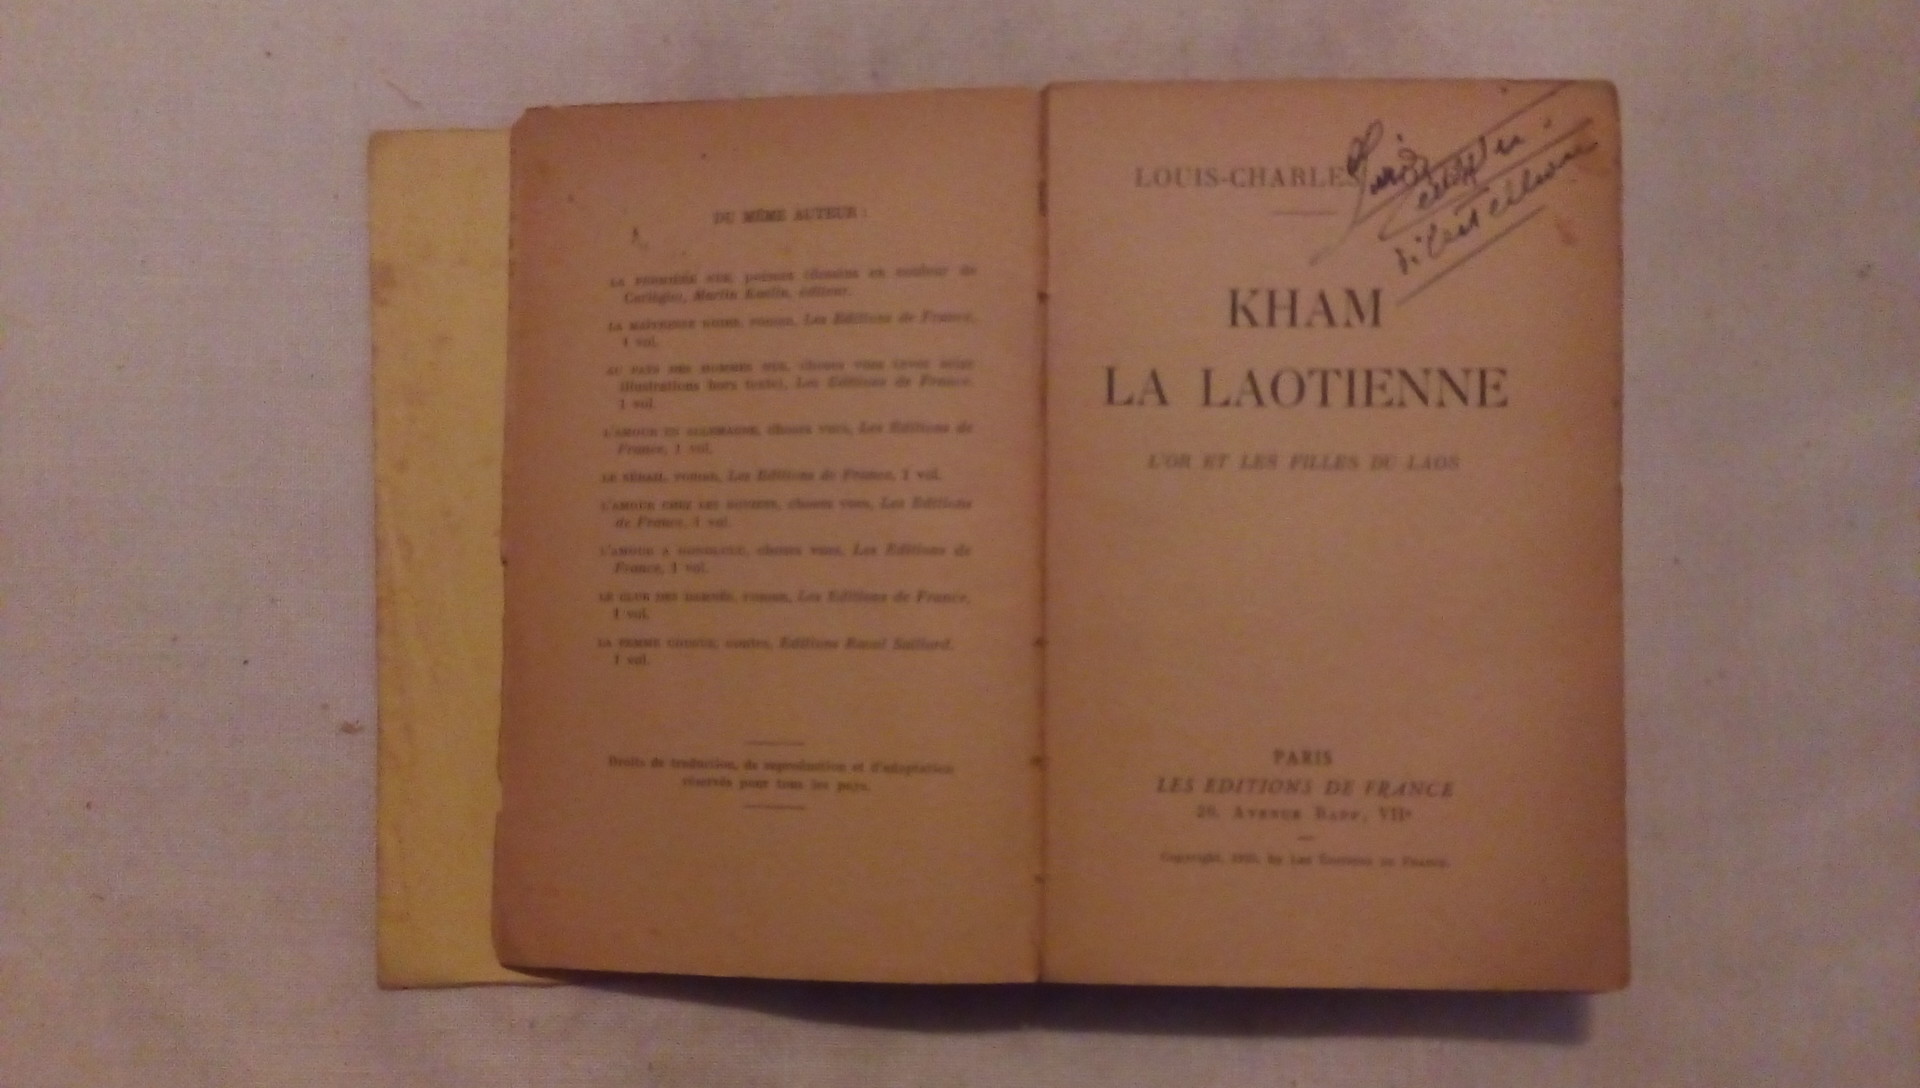 Kham la laotienne - Louis Charles - Editions de France